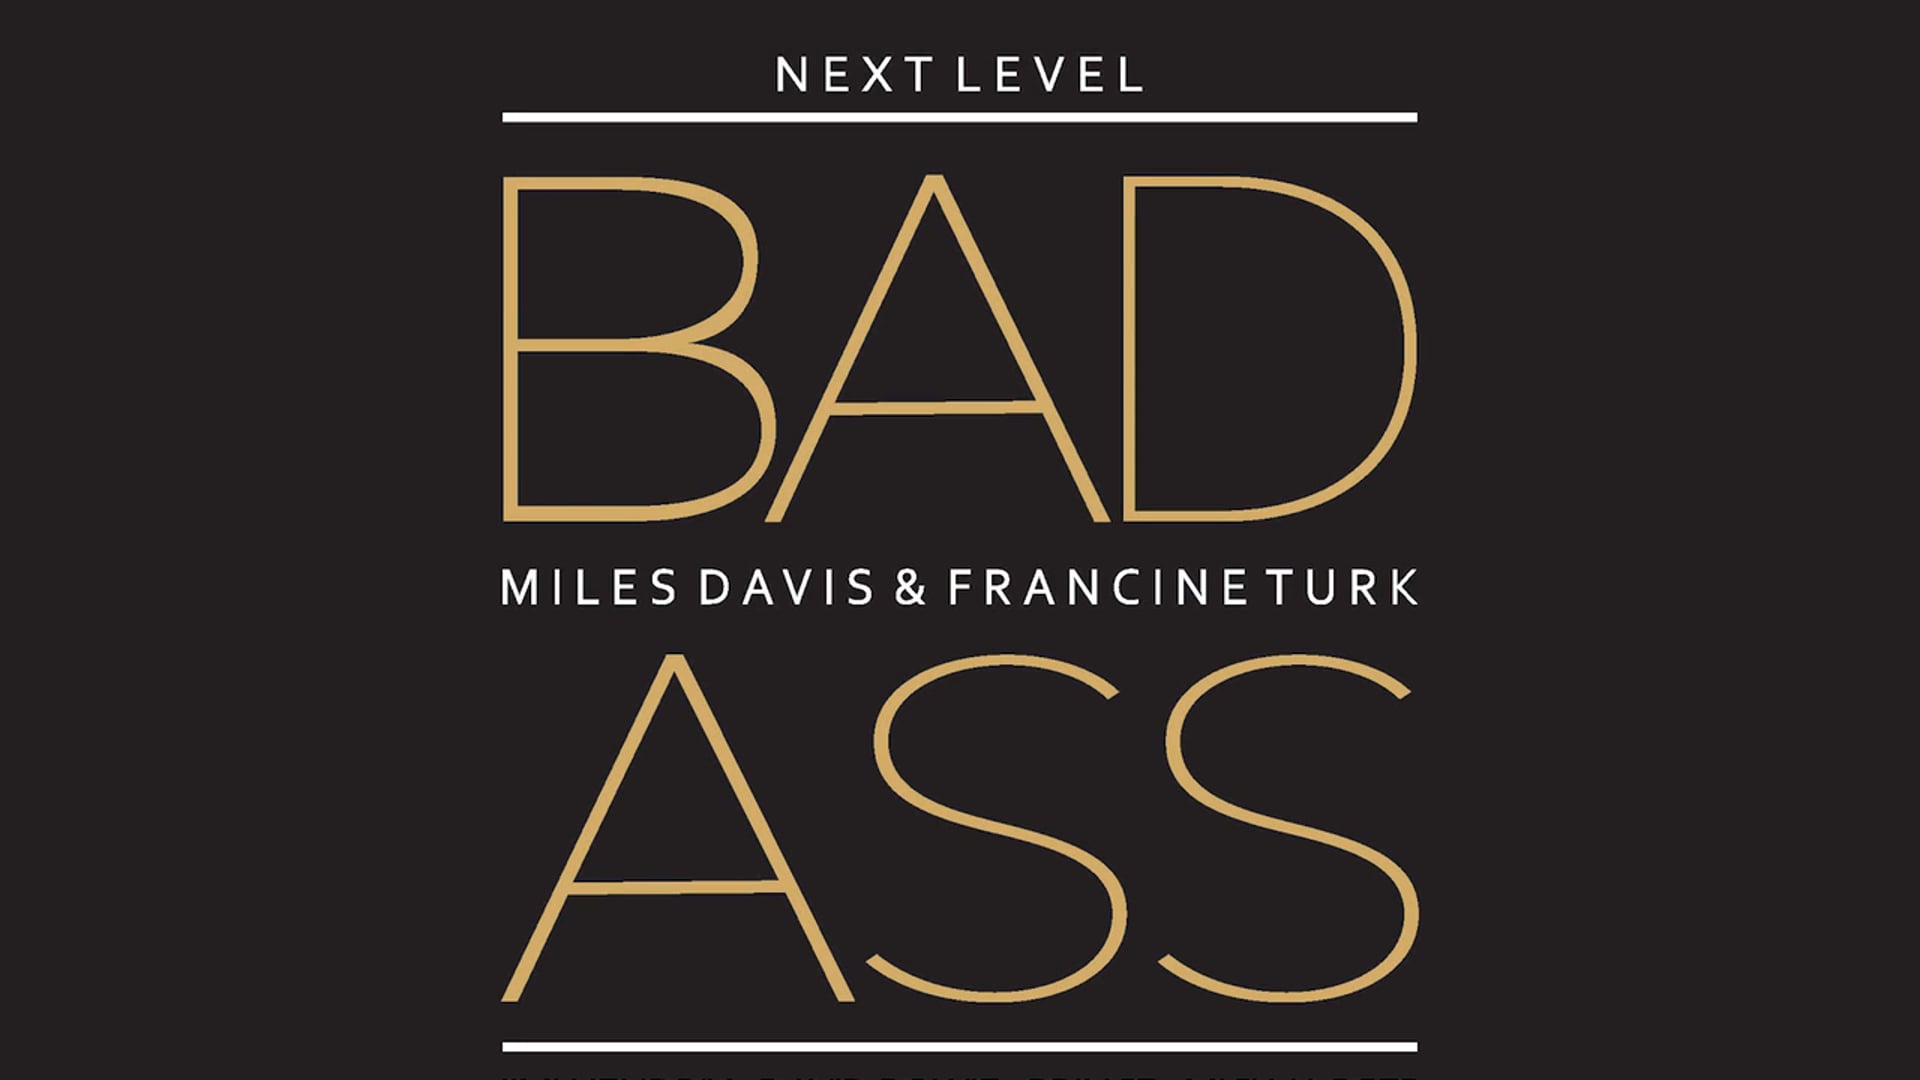 Miles Davis & Francine Turk | Next Level BadAss